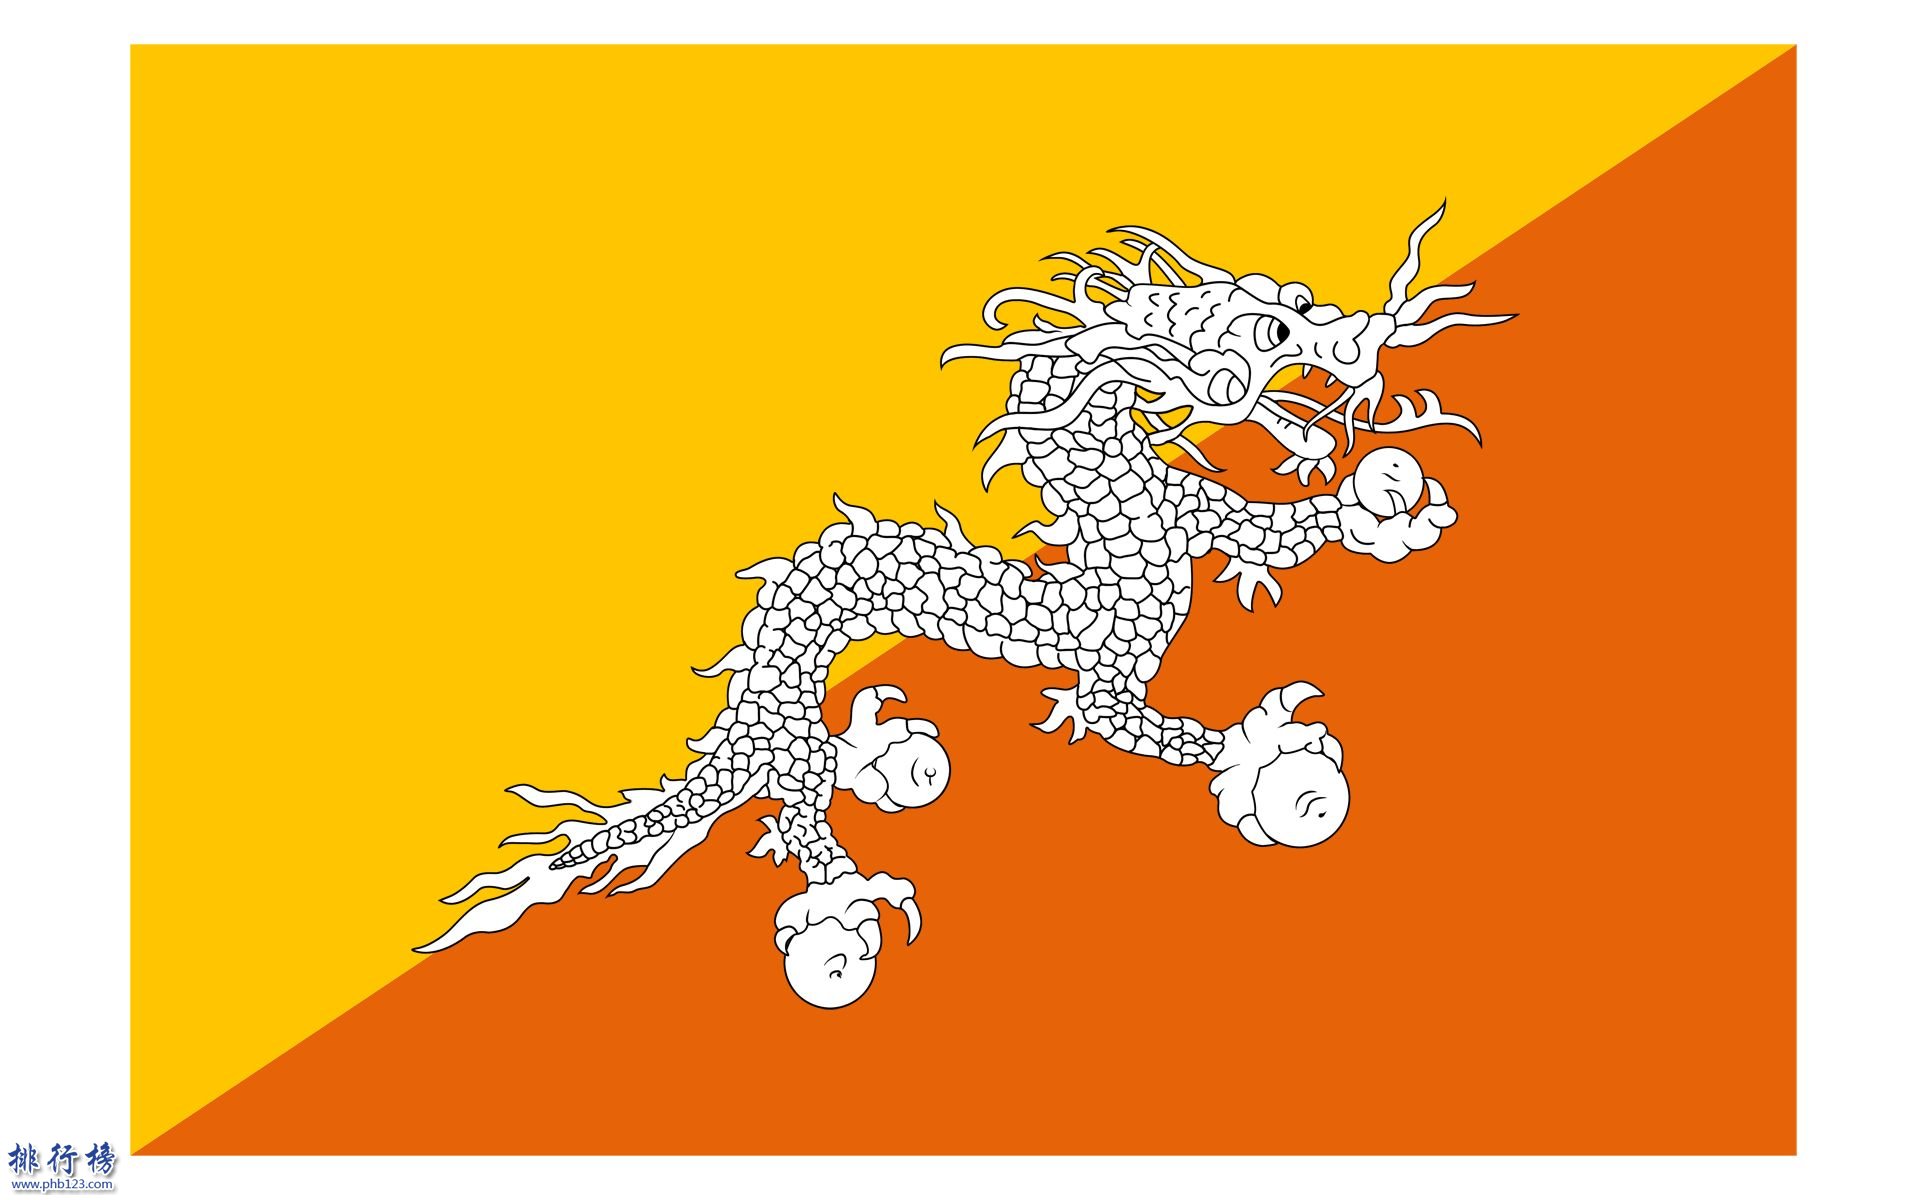 【不丹人口2018總人數】不丹人口數量2018|不丹男女比例